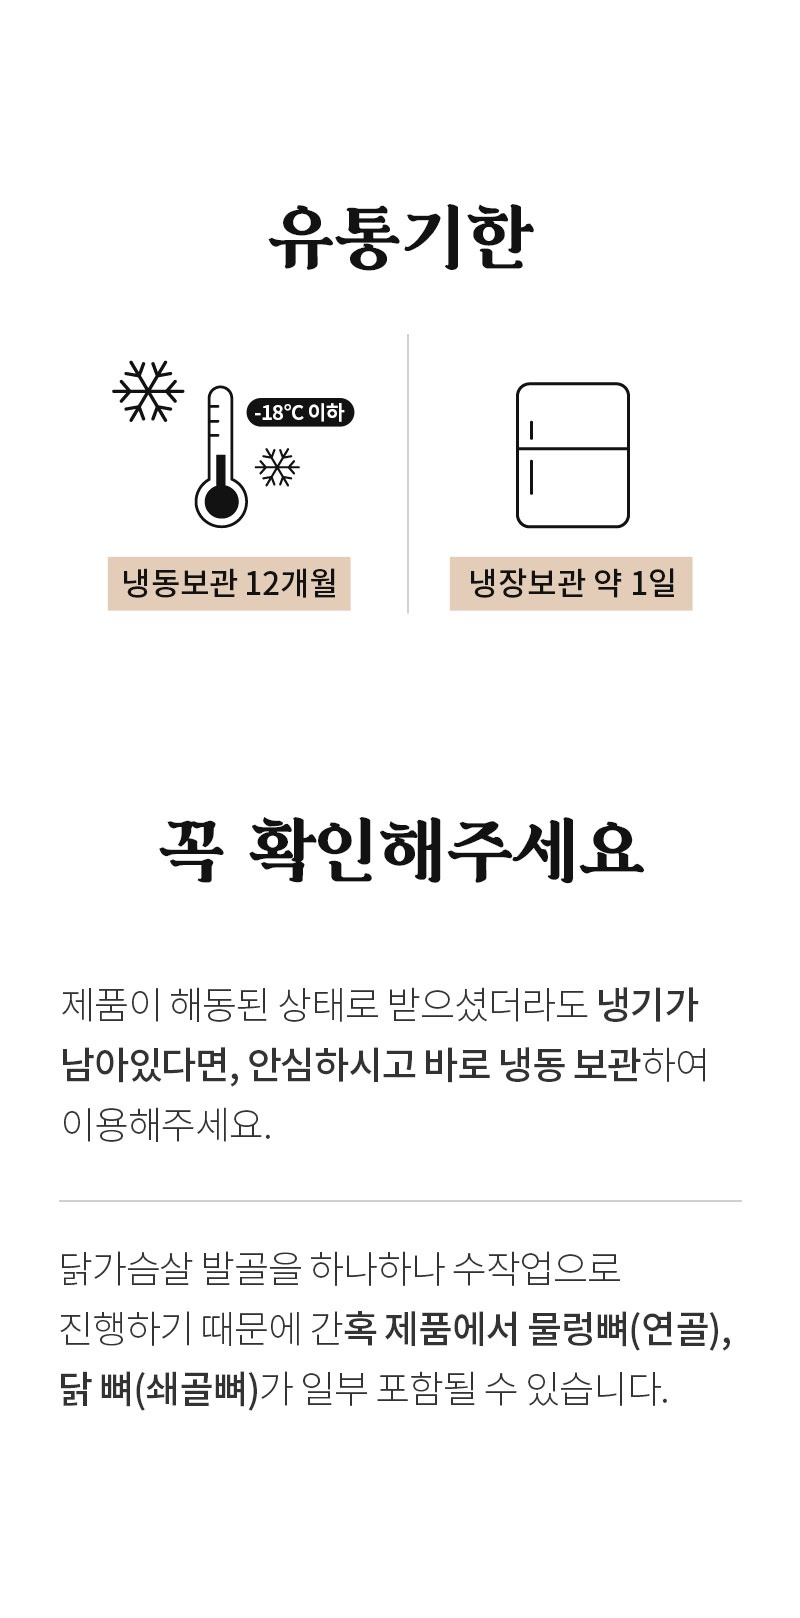 성수동905 직화떡갈비 체험단 모집 (11월 14일 ~ 11월 20일)